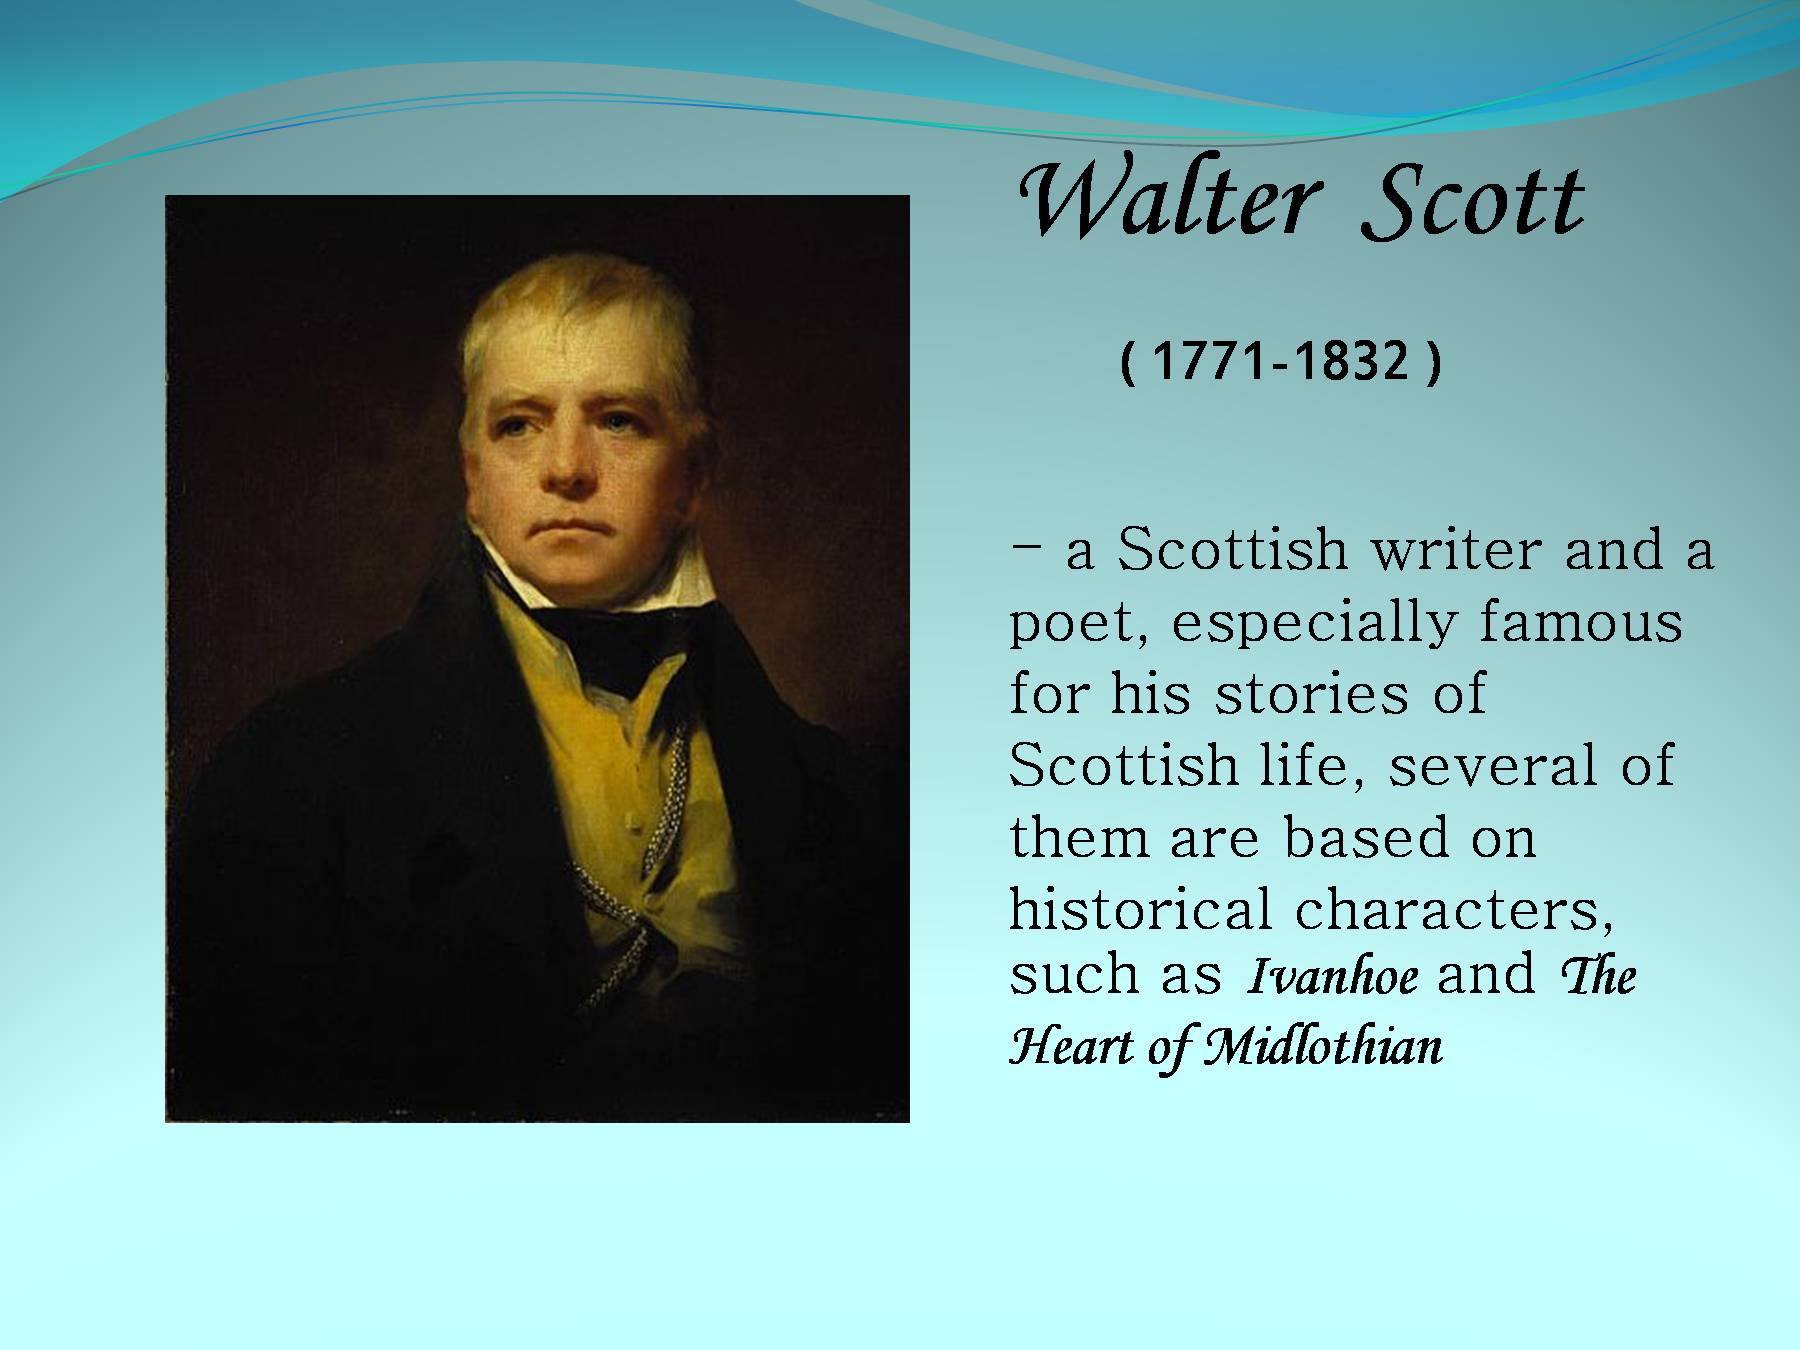 Famous перевести. Walter Scott (1771-1832). Писатели Великобритании. Известные личности. Известная личность на английском.